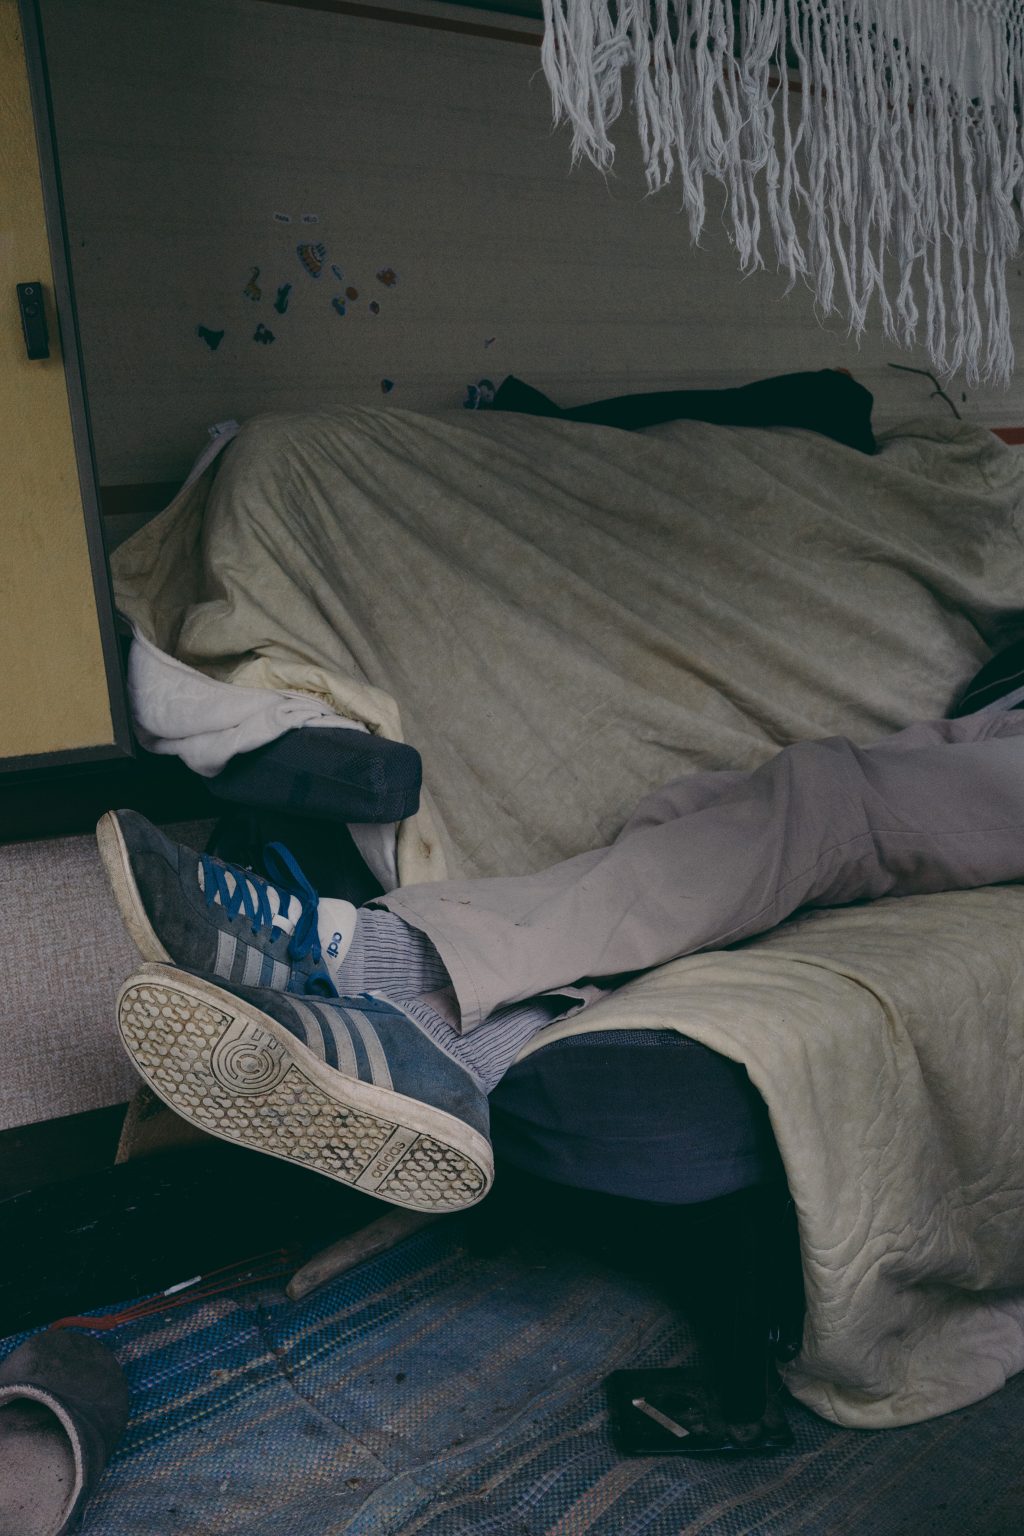 Valdivienne, France, May 2018 - Inside the caravan in which Tristan Plot lived for a year. >< 
Valdivienne, Francia, maggio 2018 - All'interno della roulotte in cui Tristan Plot ha vissuto per un anno.*** SPECIAL   FEE   APPLIES ***